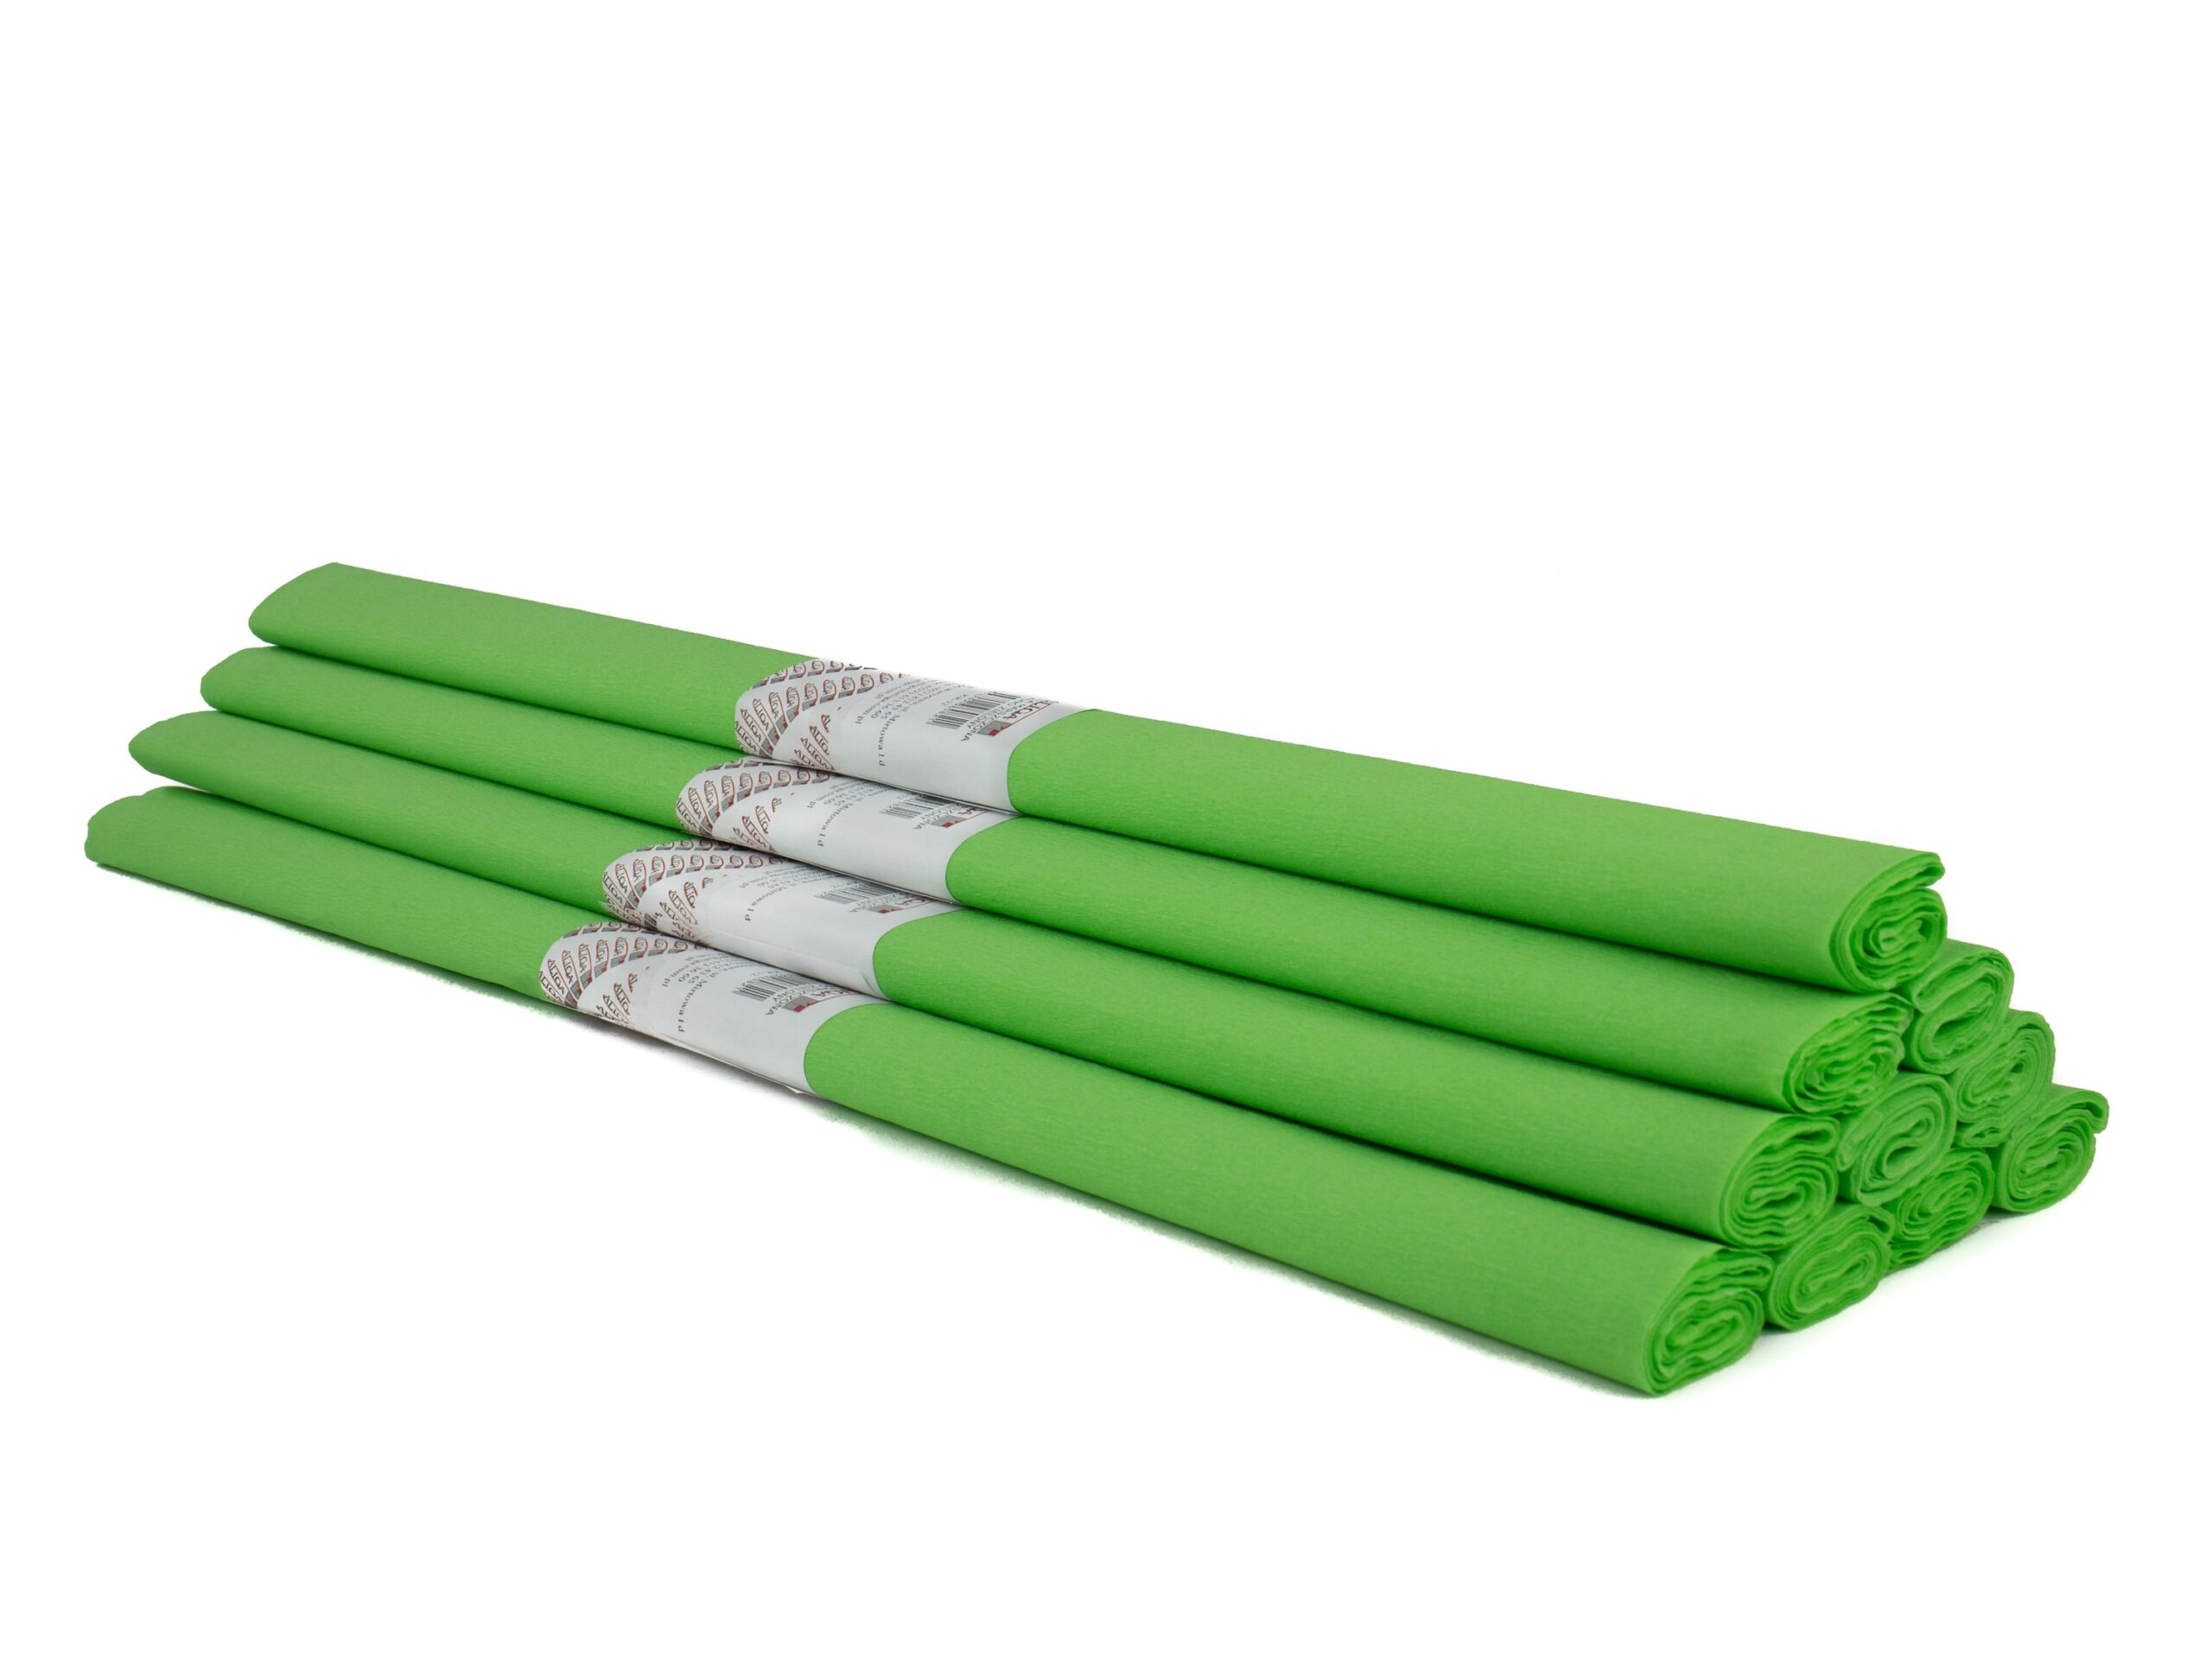 Krepinis popierius 50cmx2m šviesiai žalias KR-12 ALIGA, B06-619